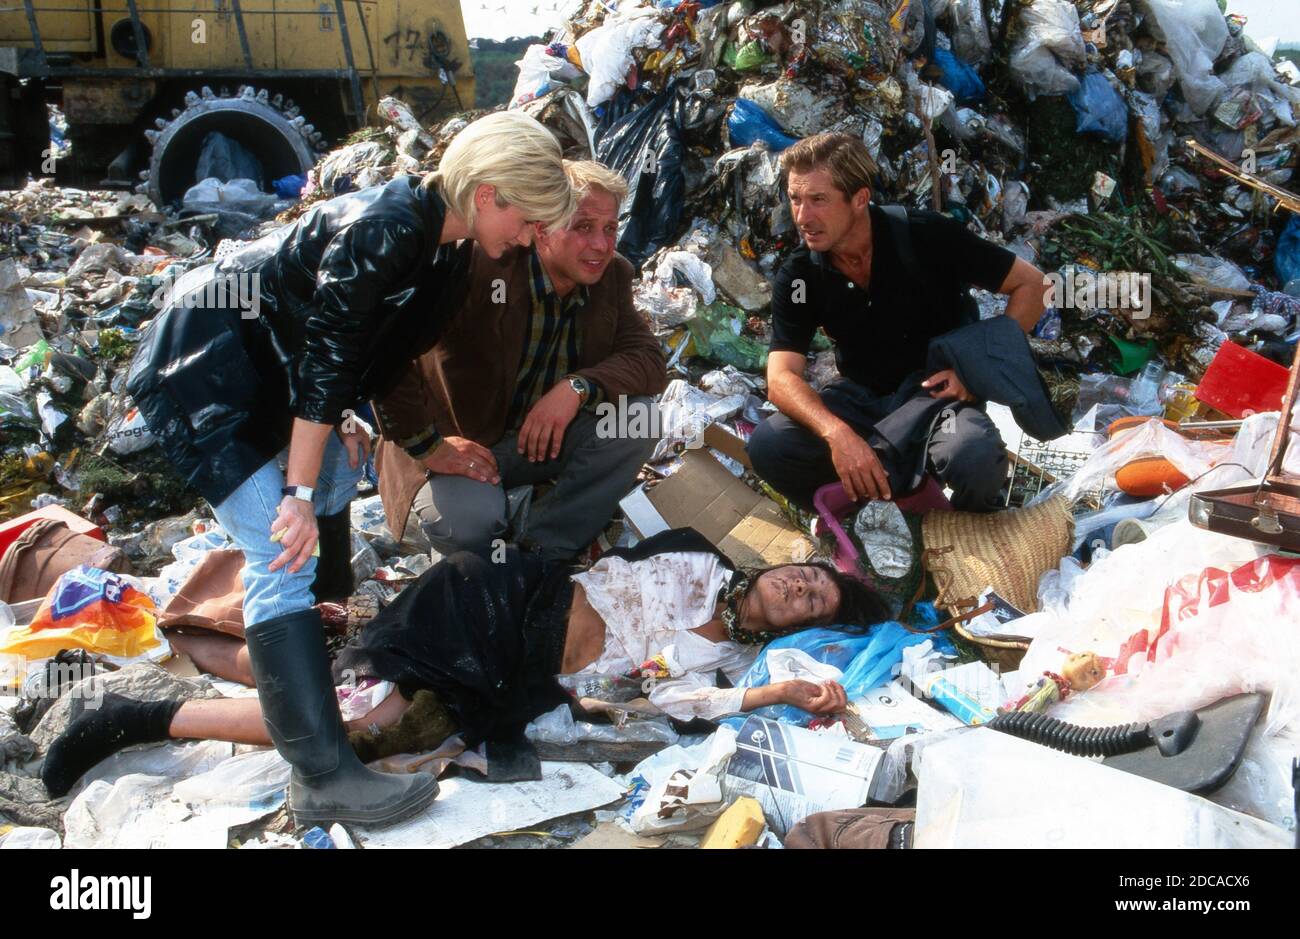 Astrid M. Fünderich, Thomas Balou Martin und Michael Lesch bei den Dreharbeiten auf der Müllkippe zur TV-serie 'der Fahnder' en Colonia, Alemania 1998. Foto de stock